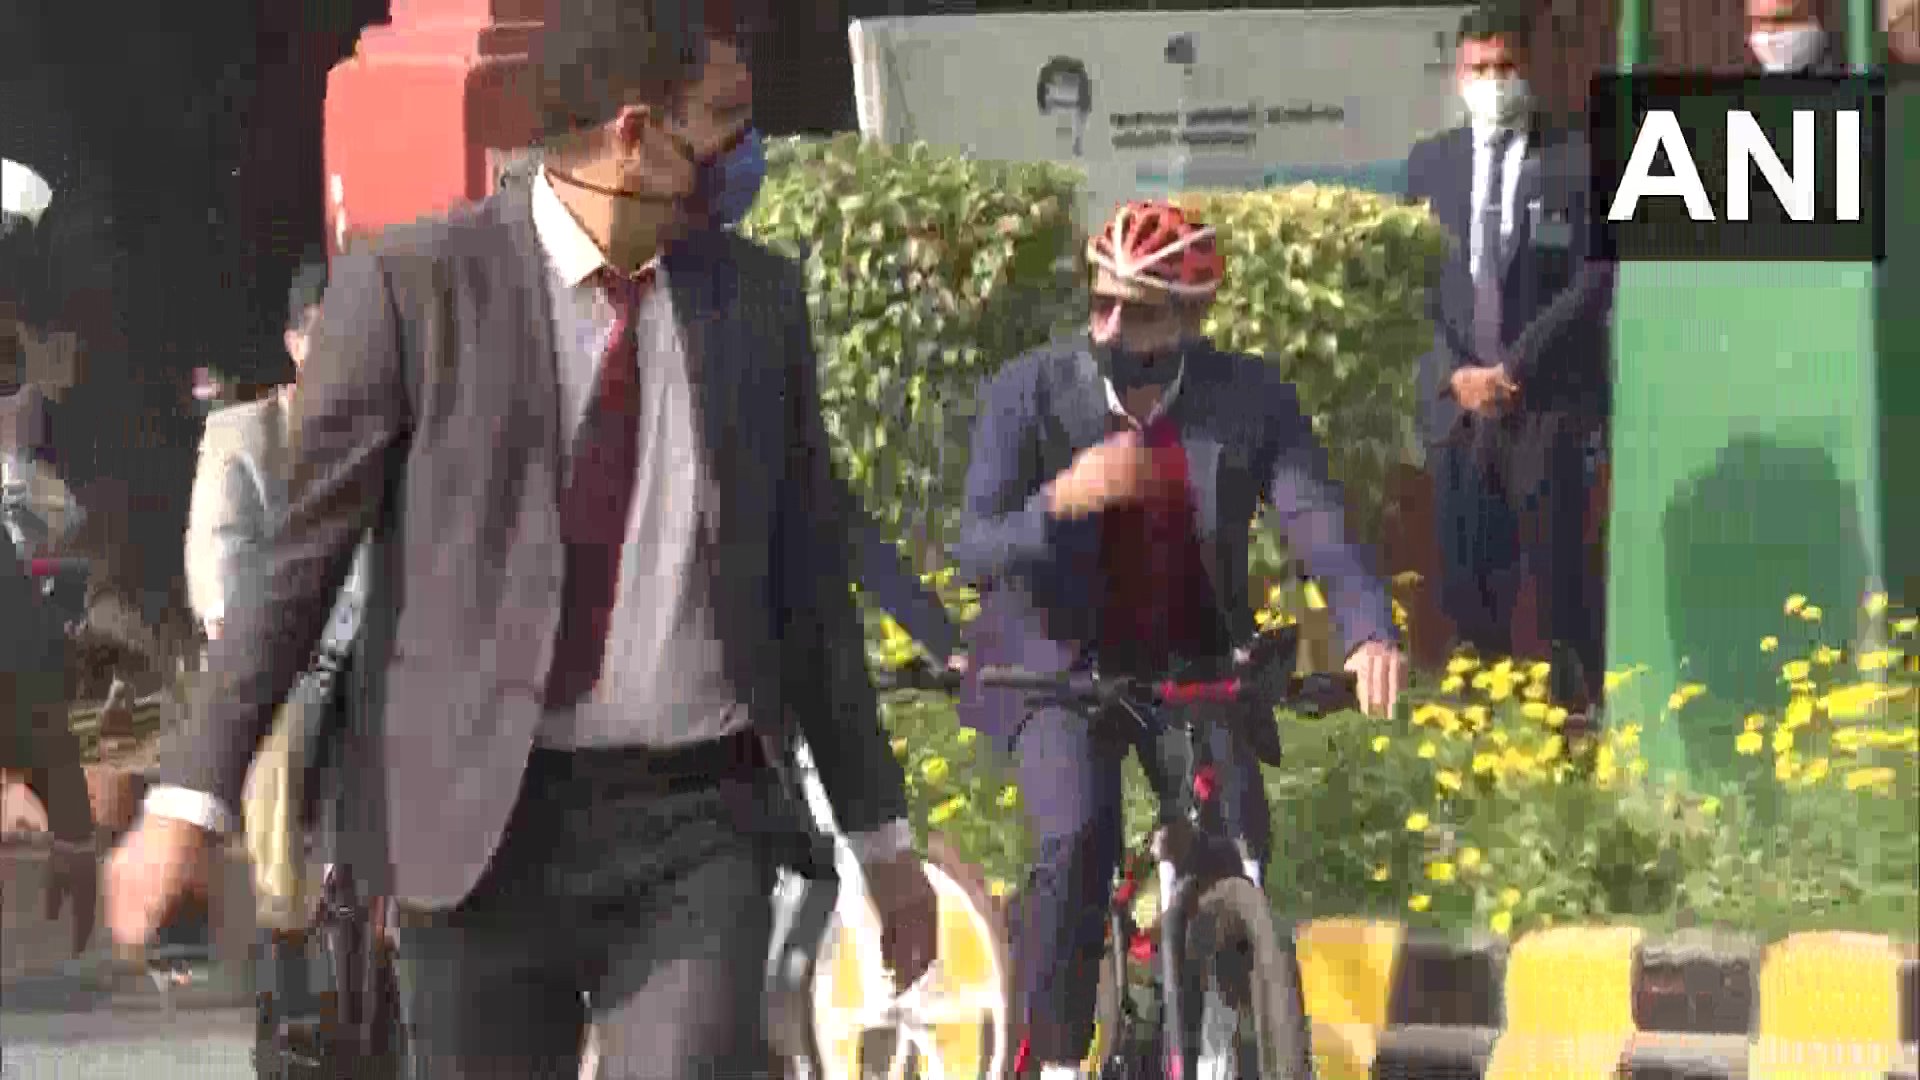 सोमवारी रॉबर्ट वढेरा यांनी दिल्लीतील खान मार्केट ते कार्यालय हा प्रवास सायकलने करत इंधन दरवाढीला विरोध केलाय. (फोटो सौजन्य: एएनआय)